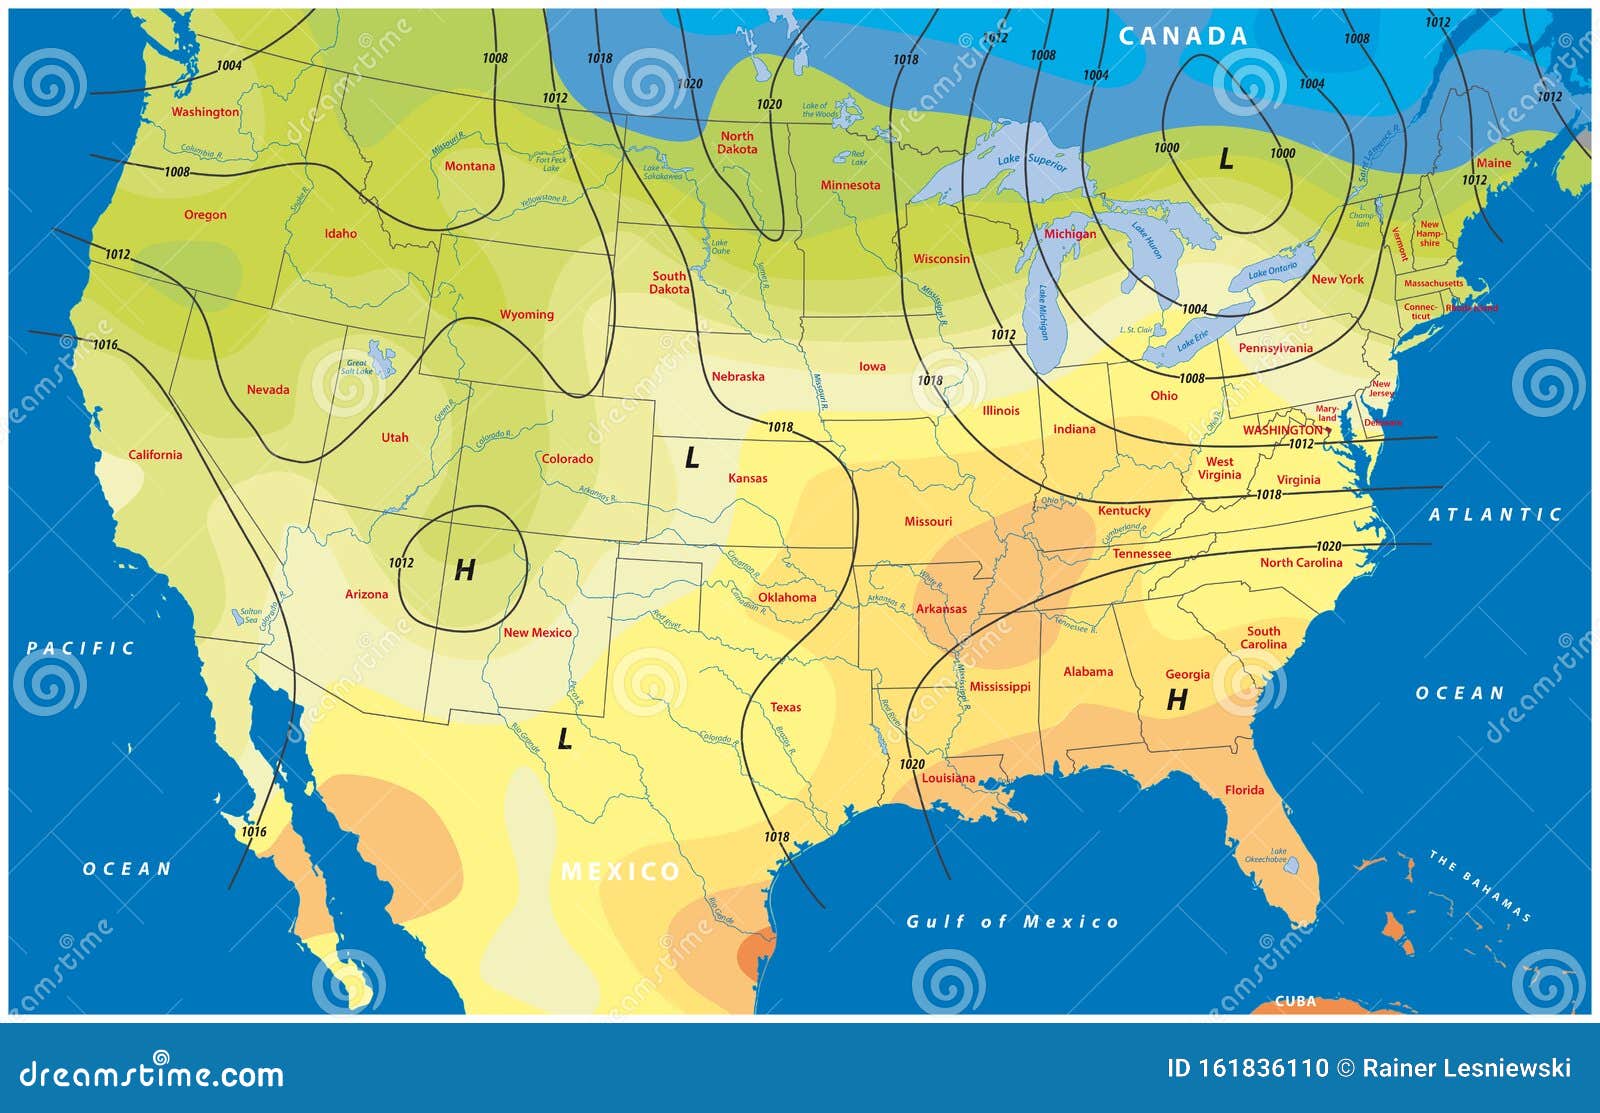 Среднегодовая температура в америке. Температурная карта USA. Карта температур. Карта температур США. Карта США И направления ветра.